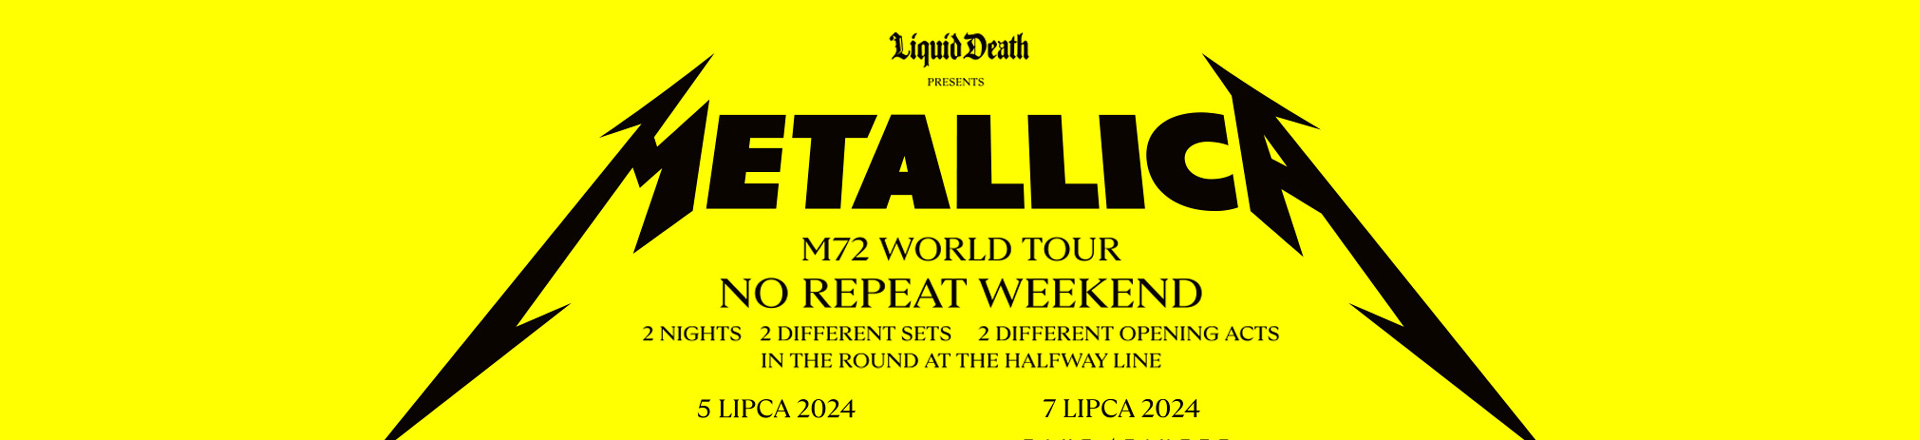 Metallica - M72 World Tour - bilety jednodniowe